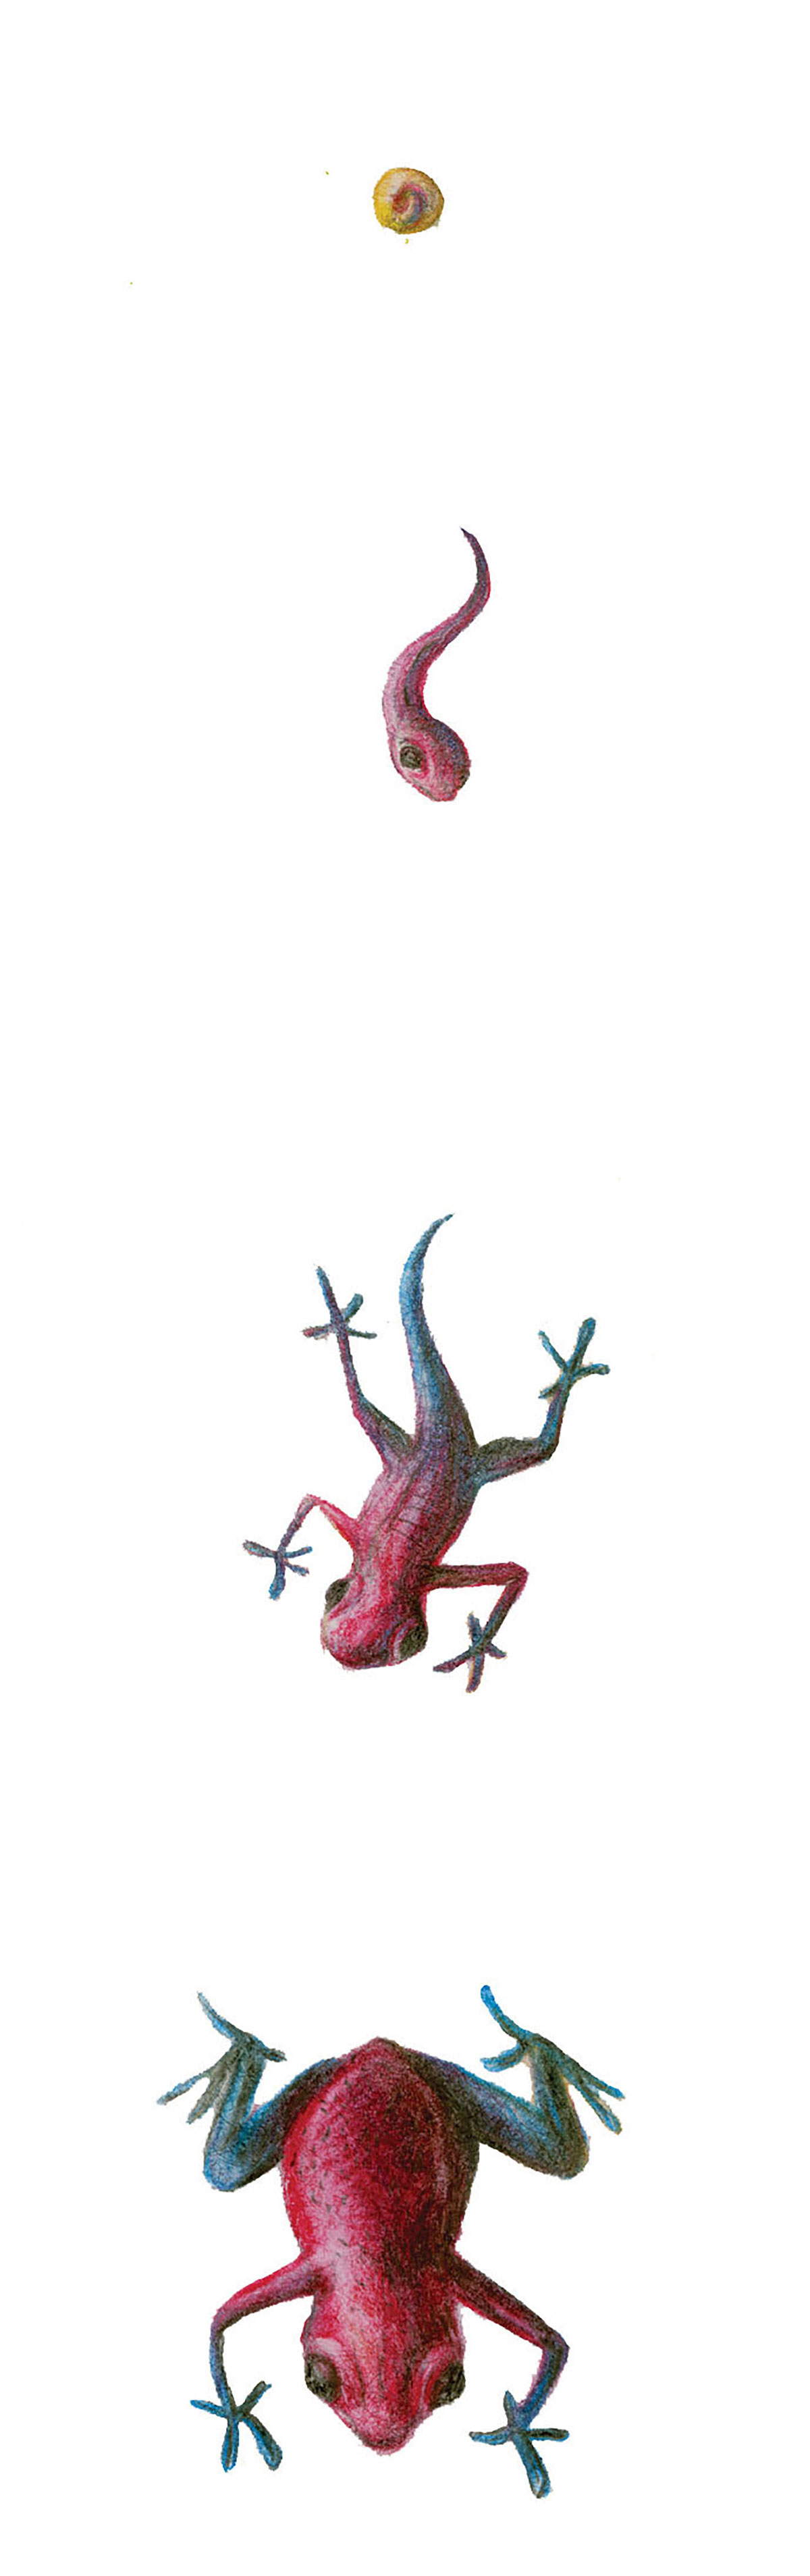 scientific illustration endangered species scientific Poison Dart Frog strawberry